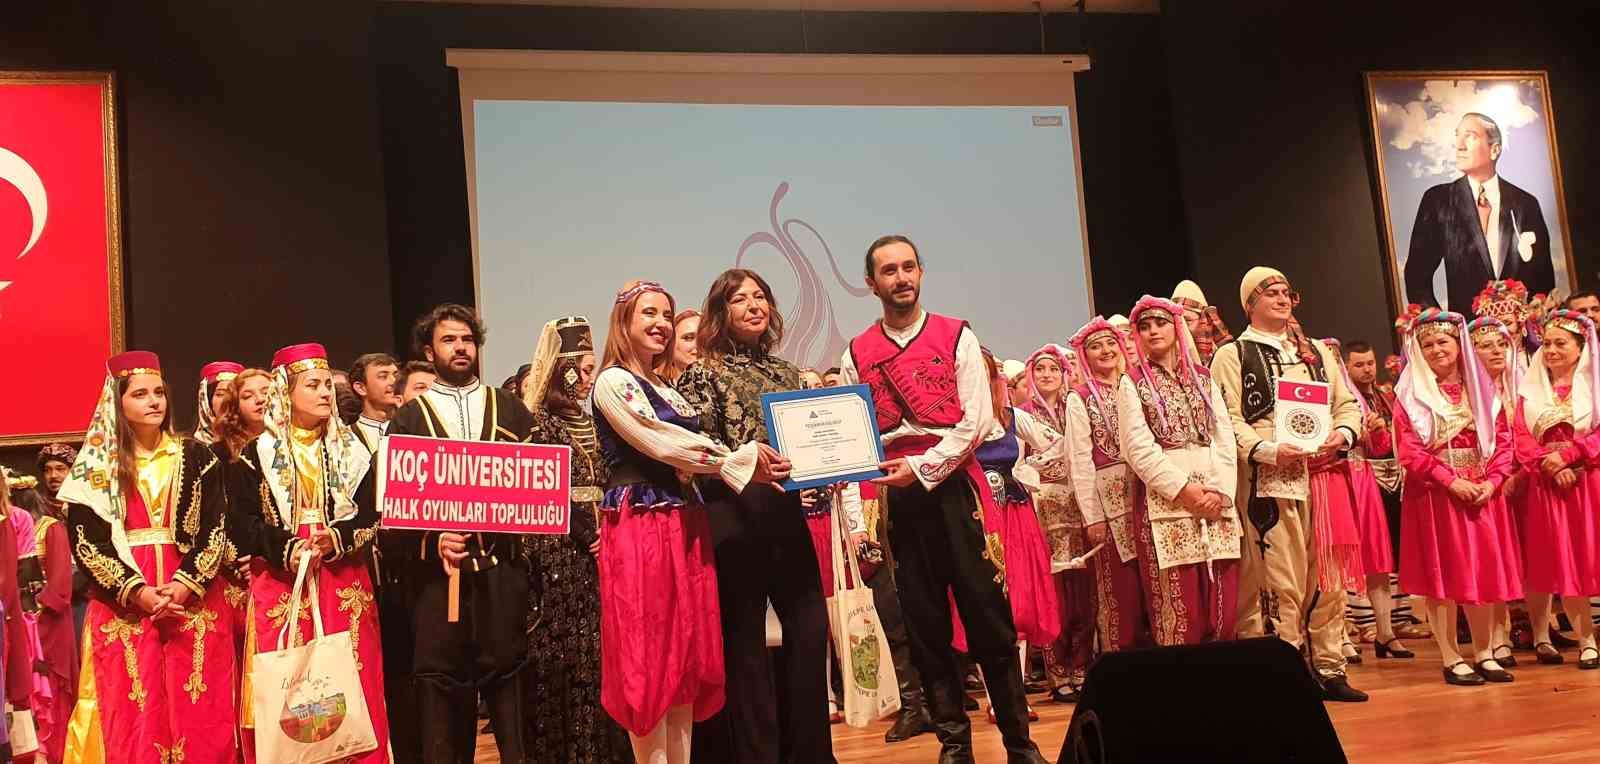 15 uluslararasi folklor festivalinde buu ruzgari 0 lPZauQbQ